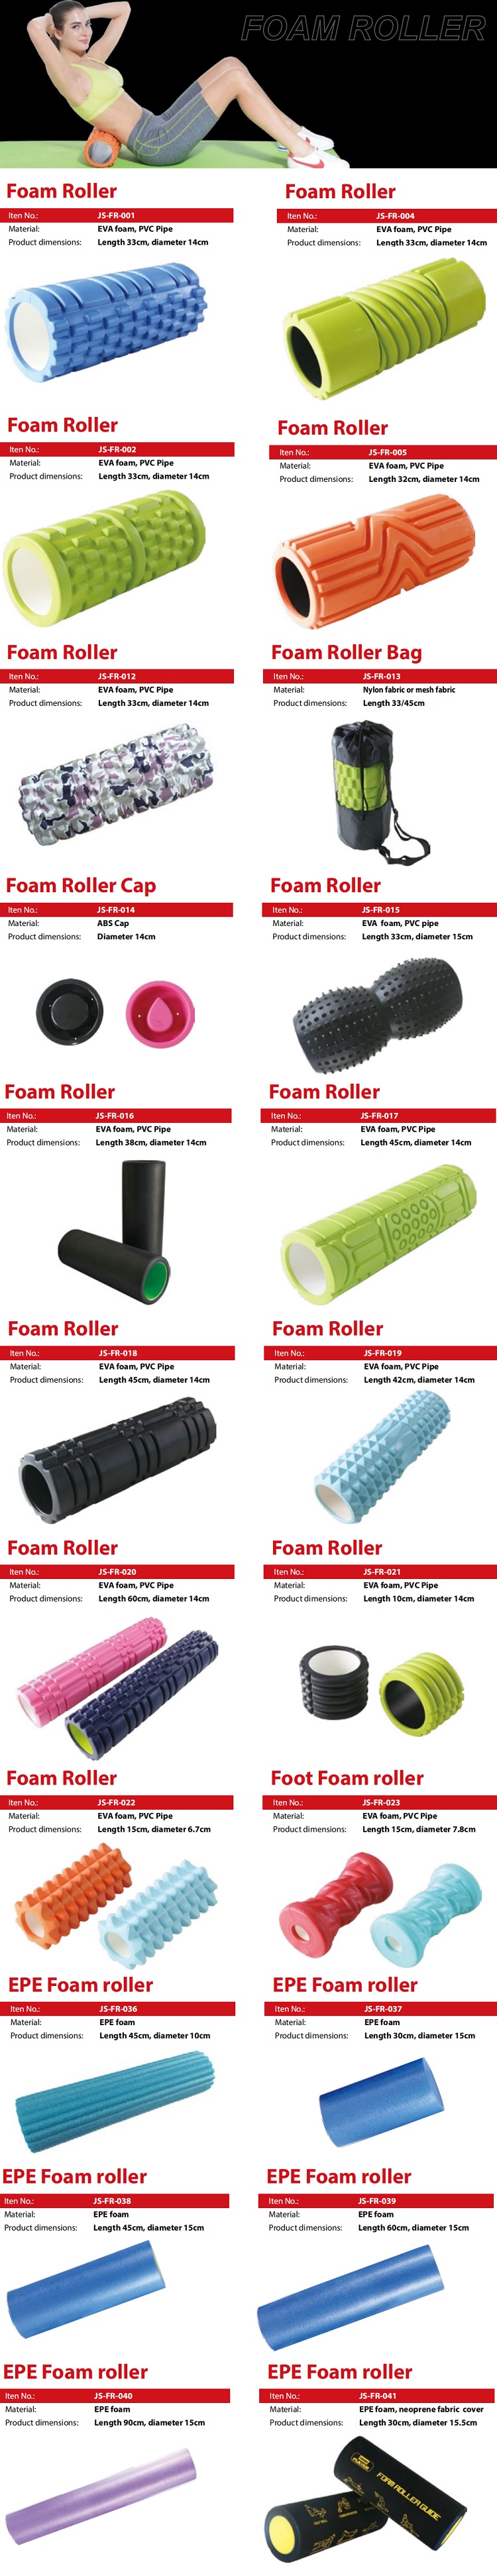 foam roller set 4.jpg